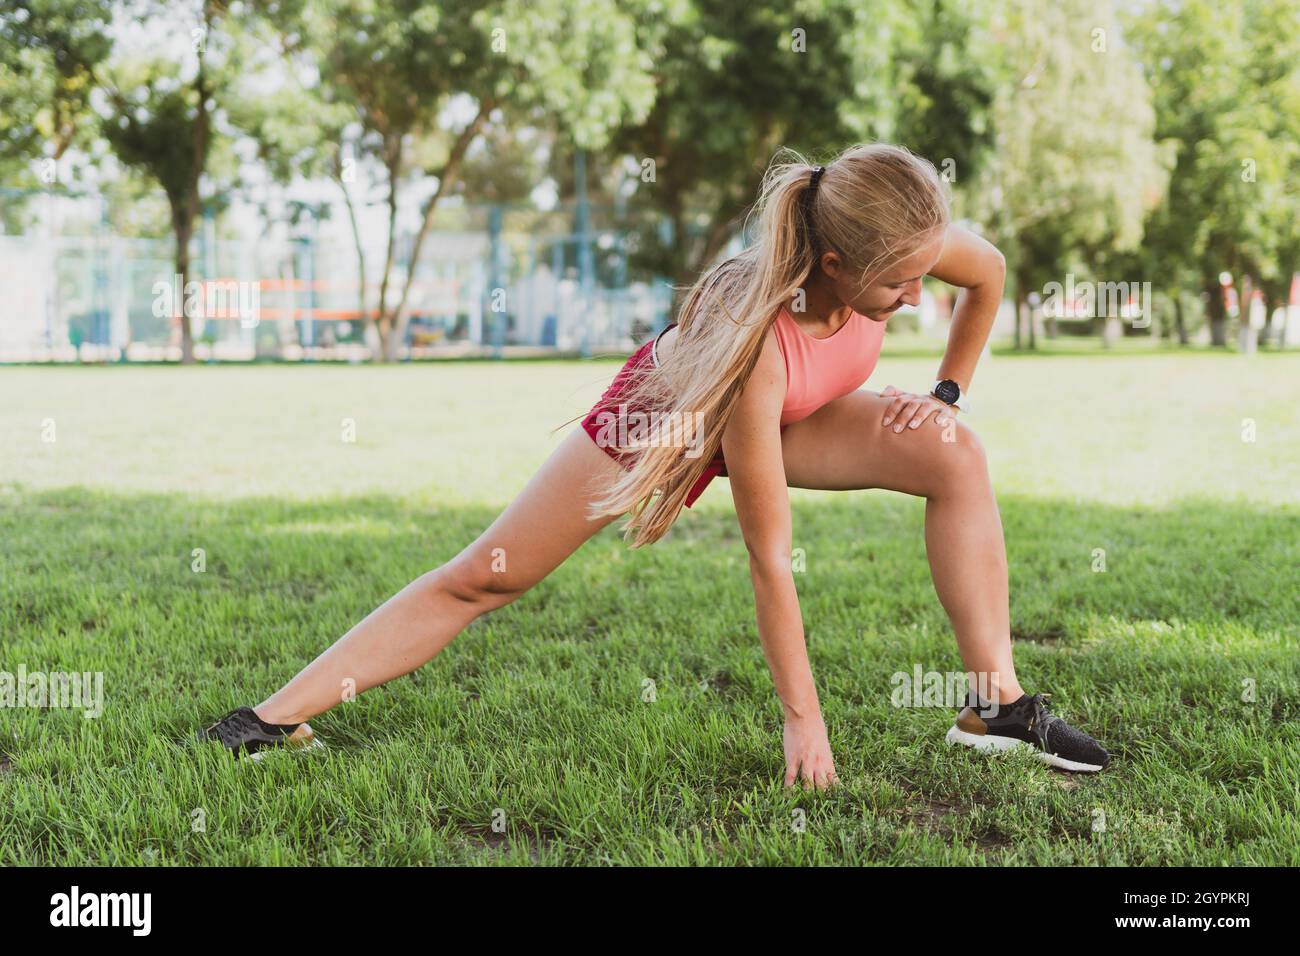 blondy sportive femme avec de longs cheveux s'étirant dans le parc avant de courir Banque D'Images